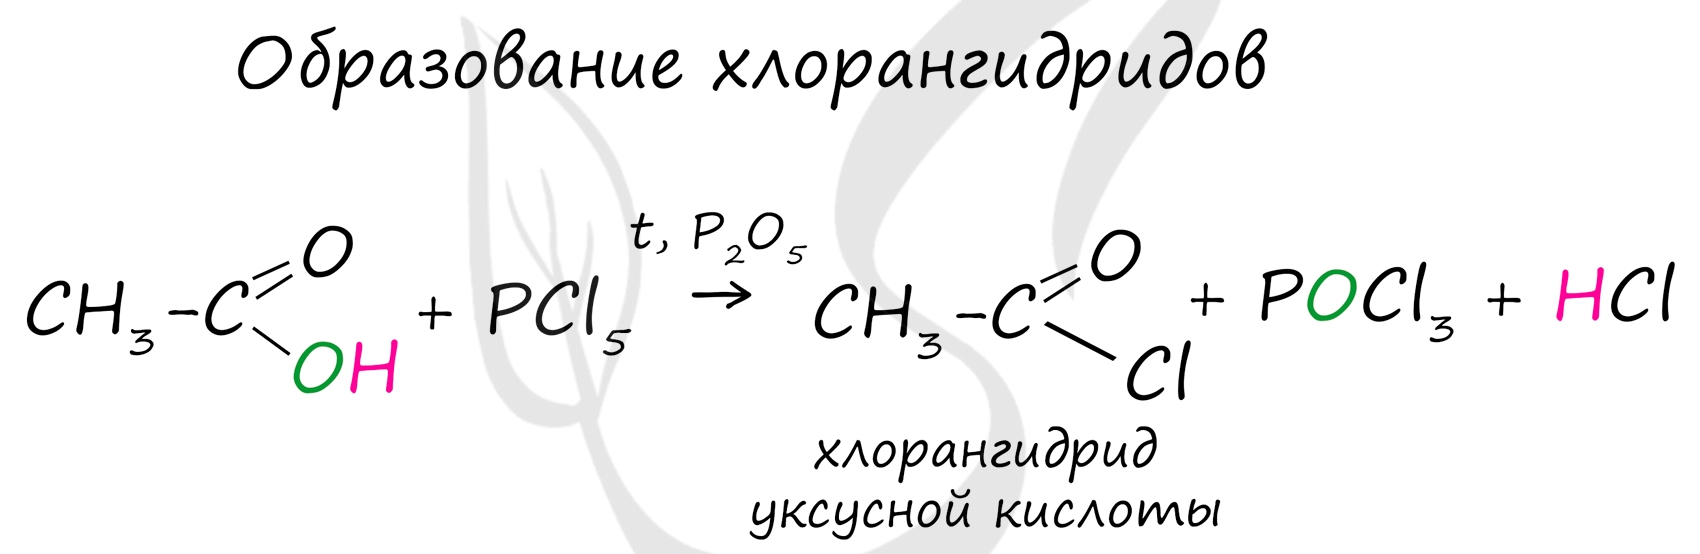 Хлорангидрид масляной кислоты. Уксусный хлорангидрид. Масляная кислота и хлор. Хлорангидрид уксусной кислоты реакции.